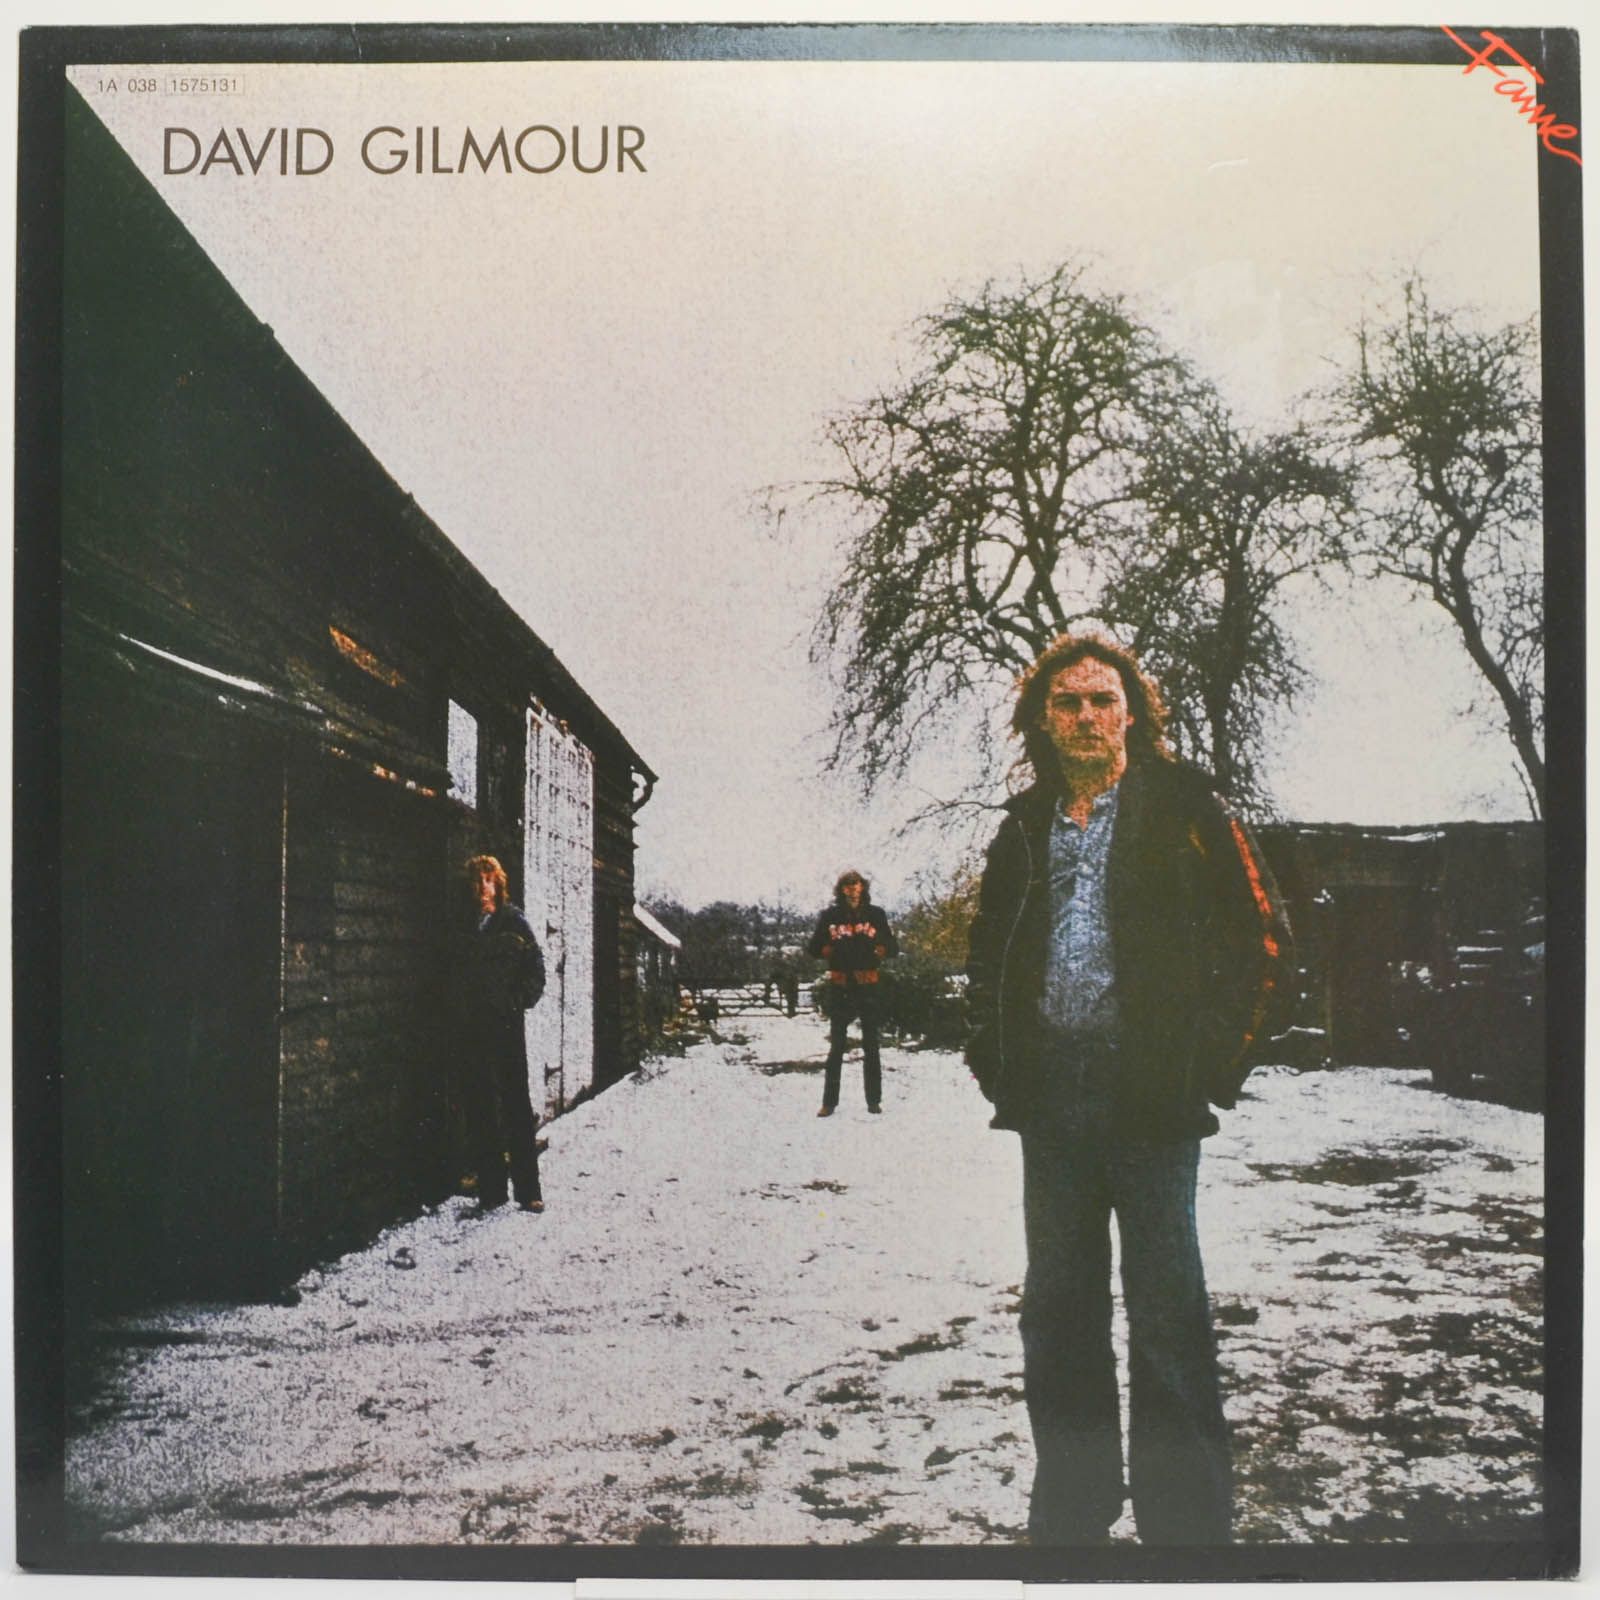 David Gilmour — David Gilmour, 1978